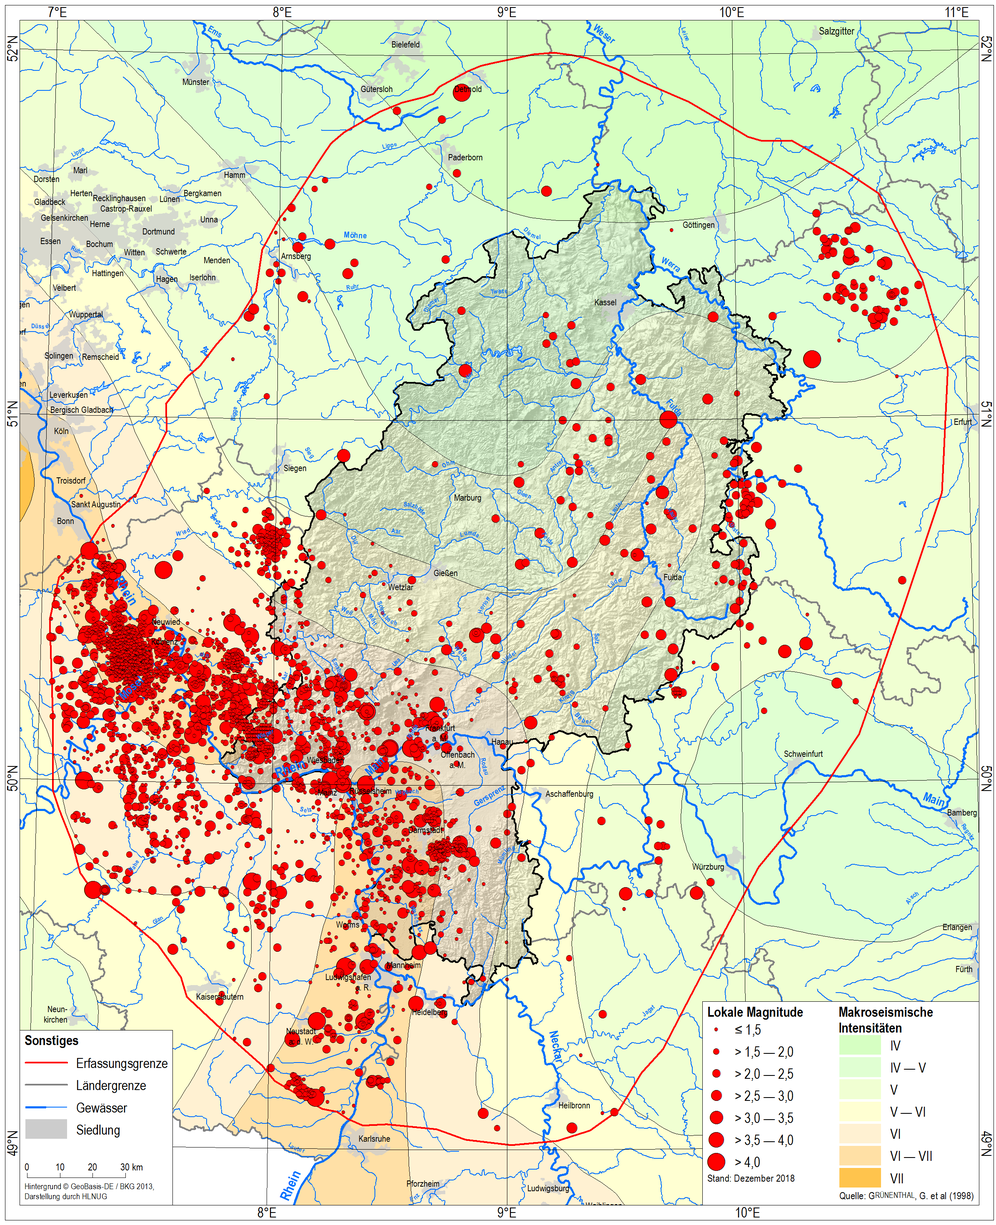 Karte von Hessen mit Erdbebenstellen